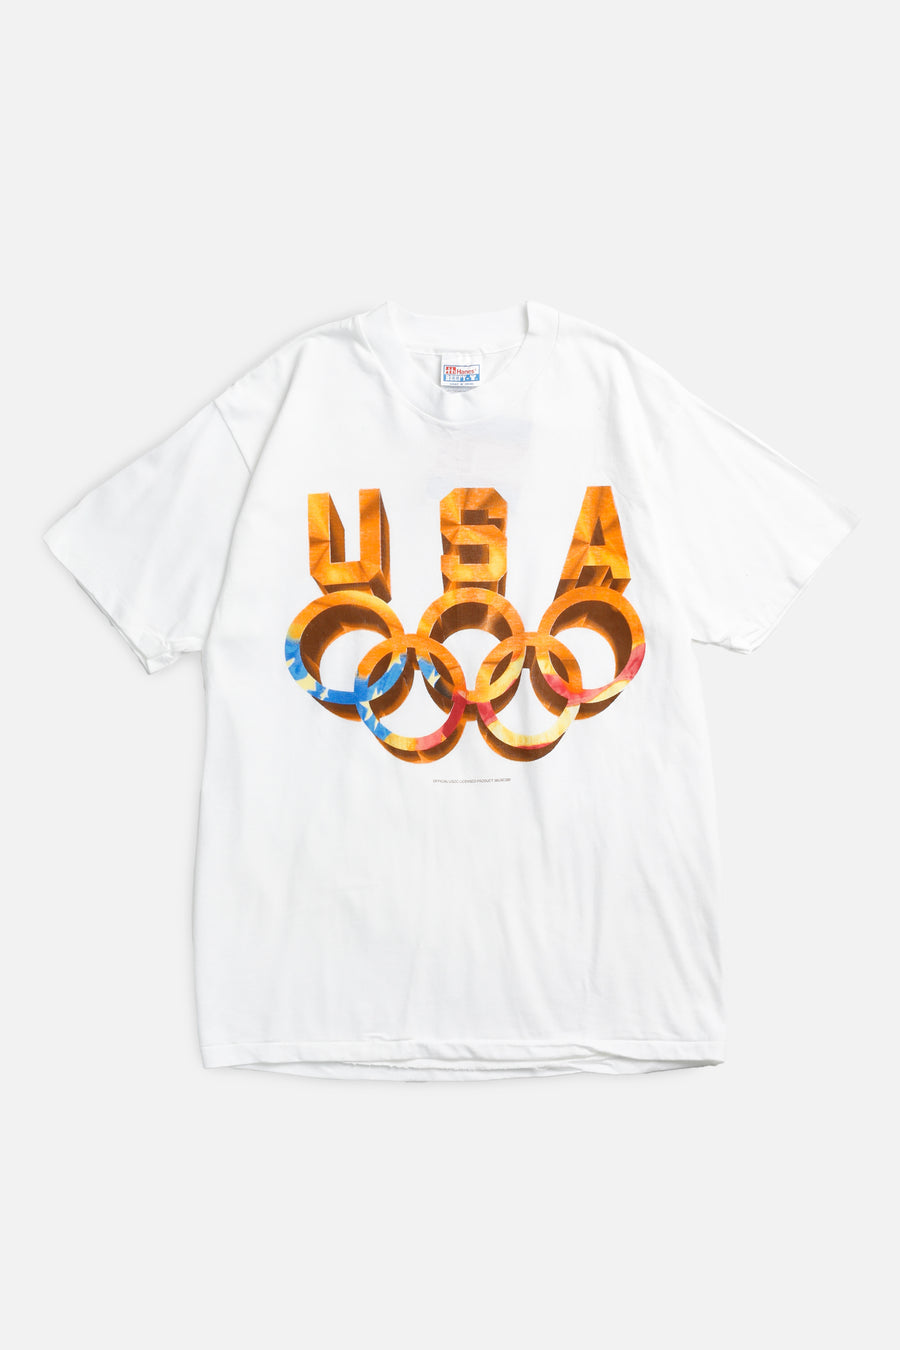 Vintage Olympics USA Tee - S